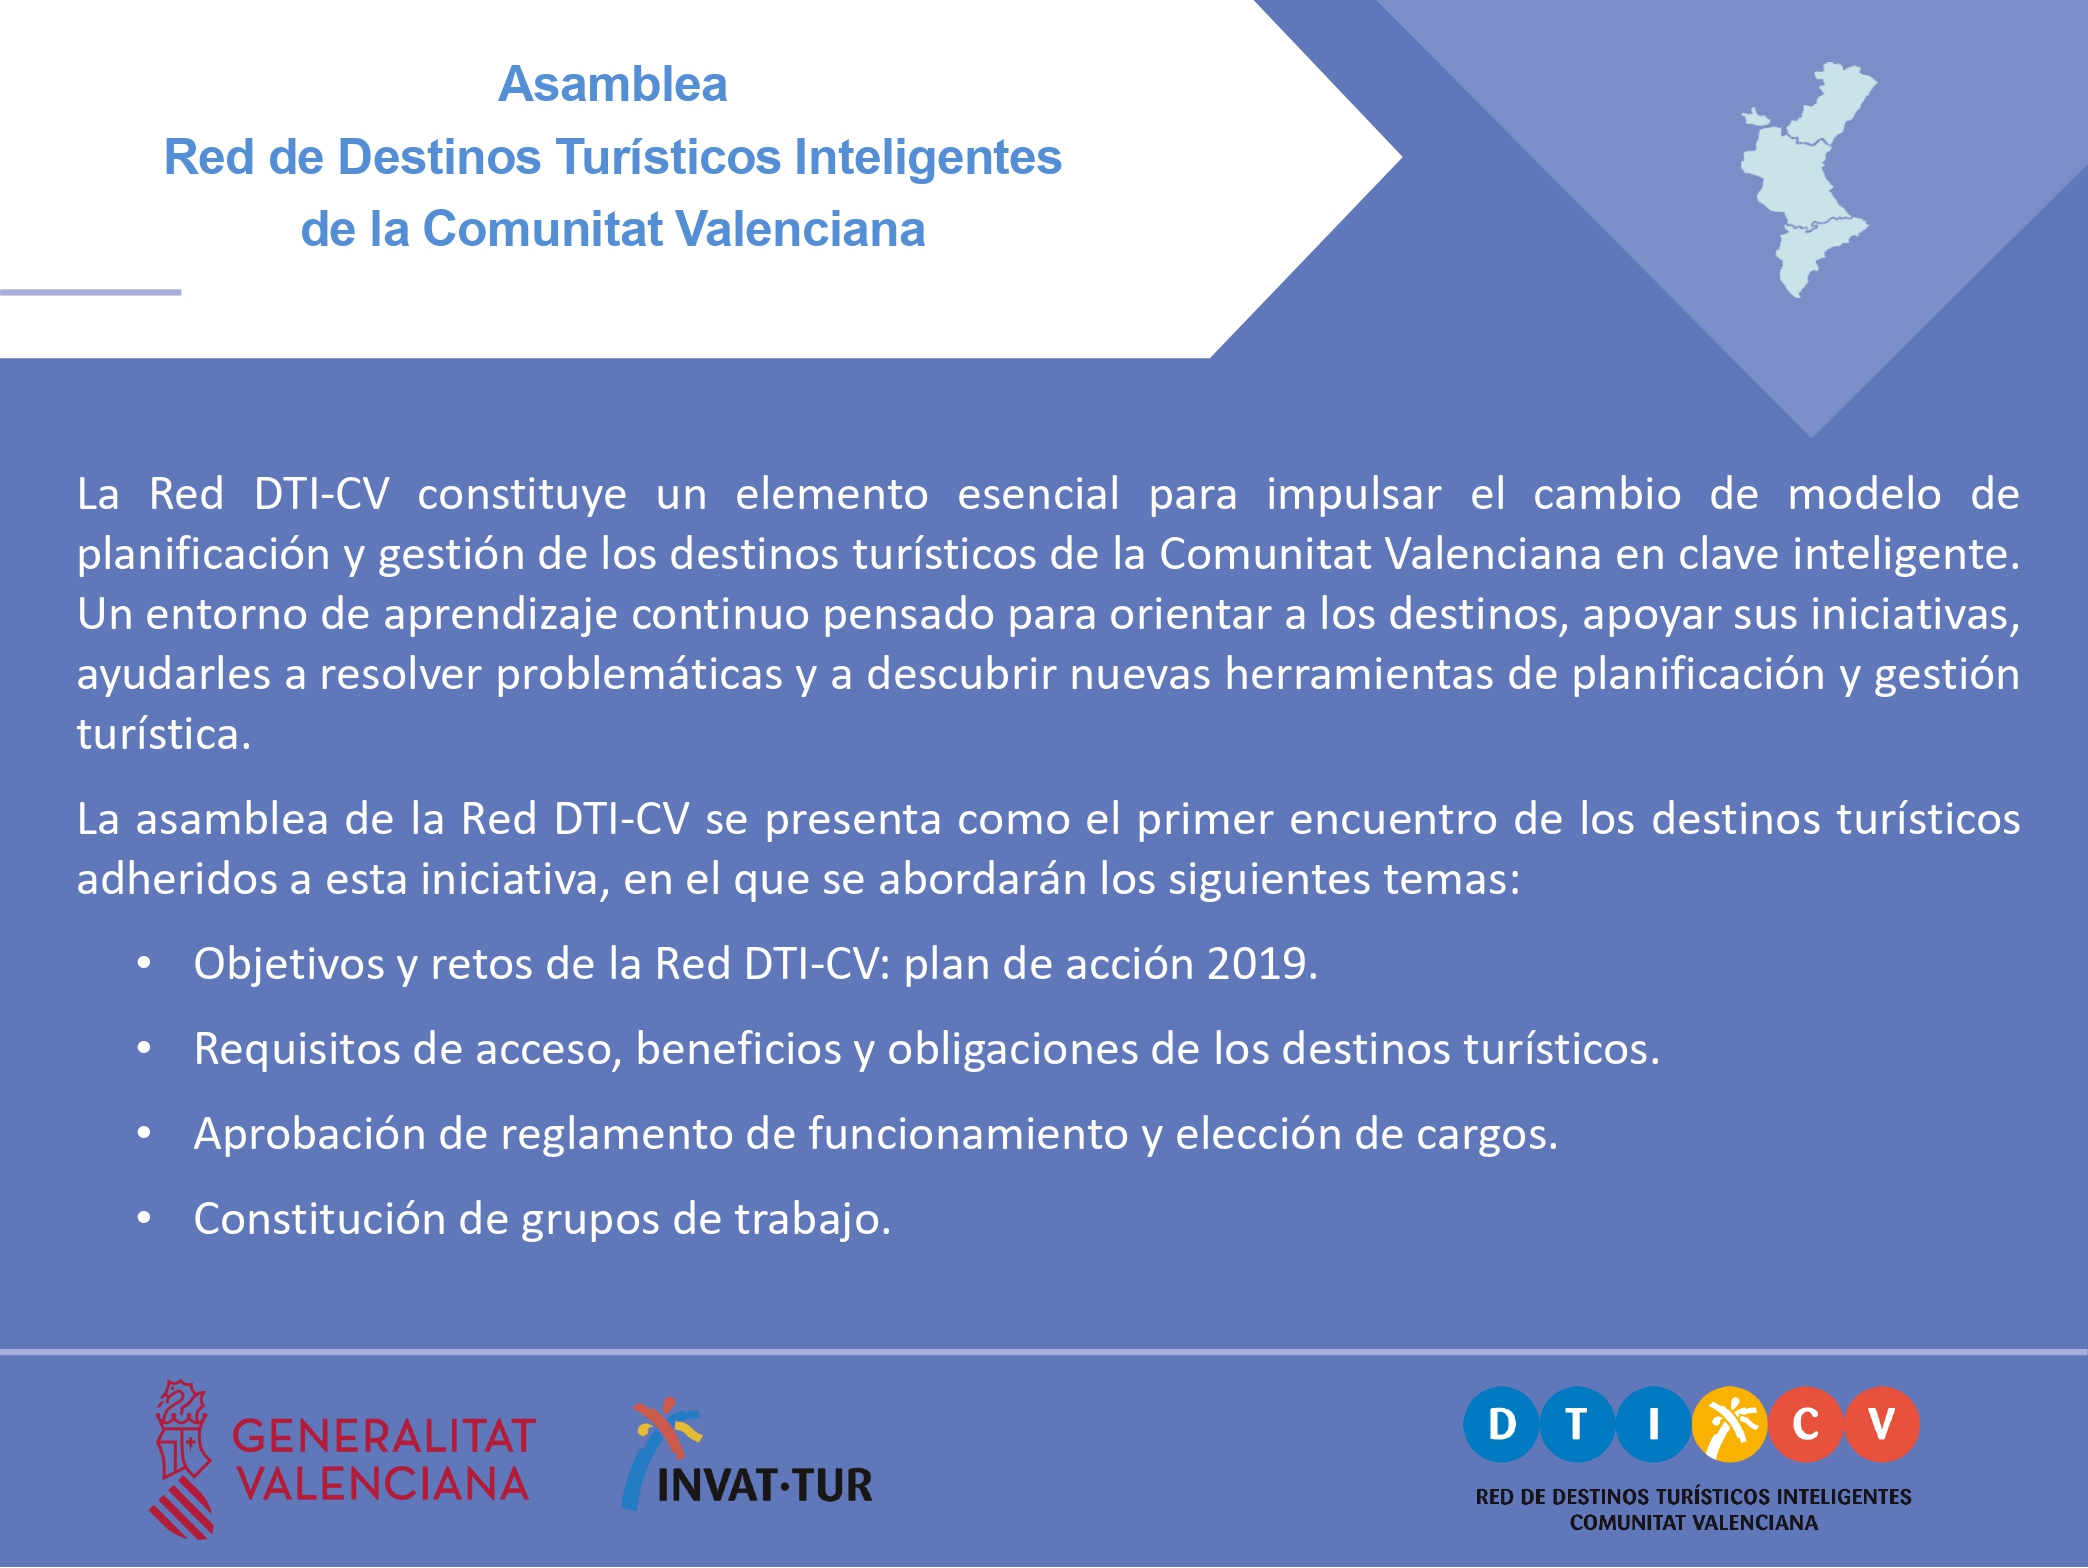 Presentación de la Asamblea de Destinos Turísticos Inteligentes de la Comunitat Valenciana, Red DTICV, 2019